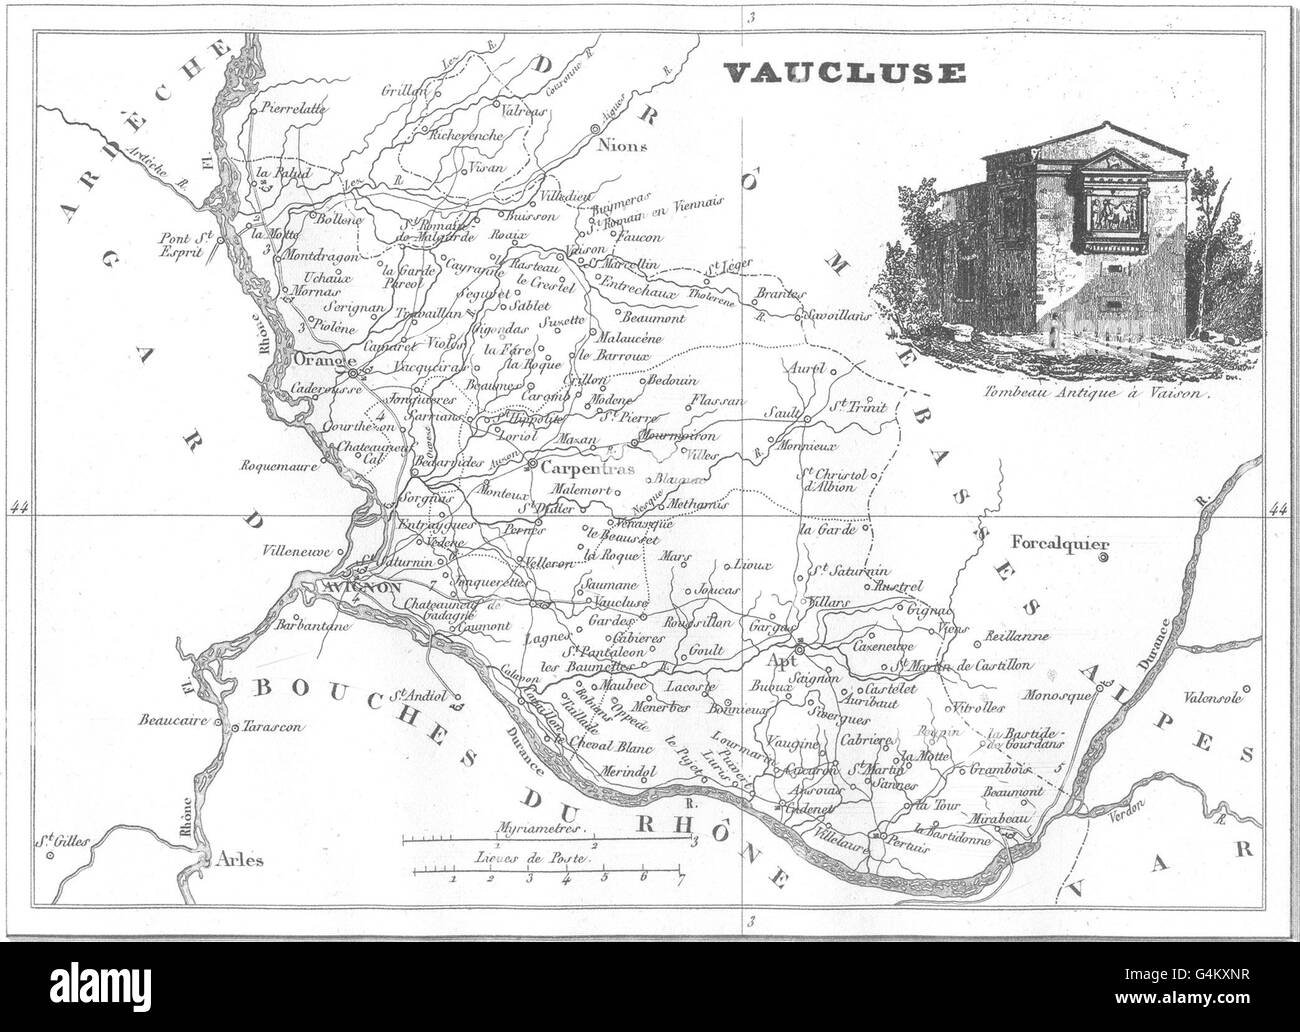 VAUCLUSE: Département du Vaucluse, 1835 antique map Stock Photo - Alamy